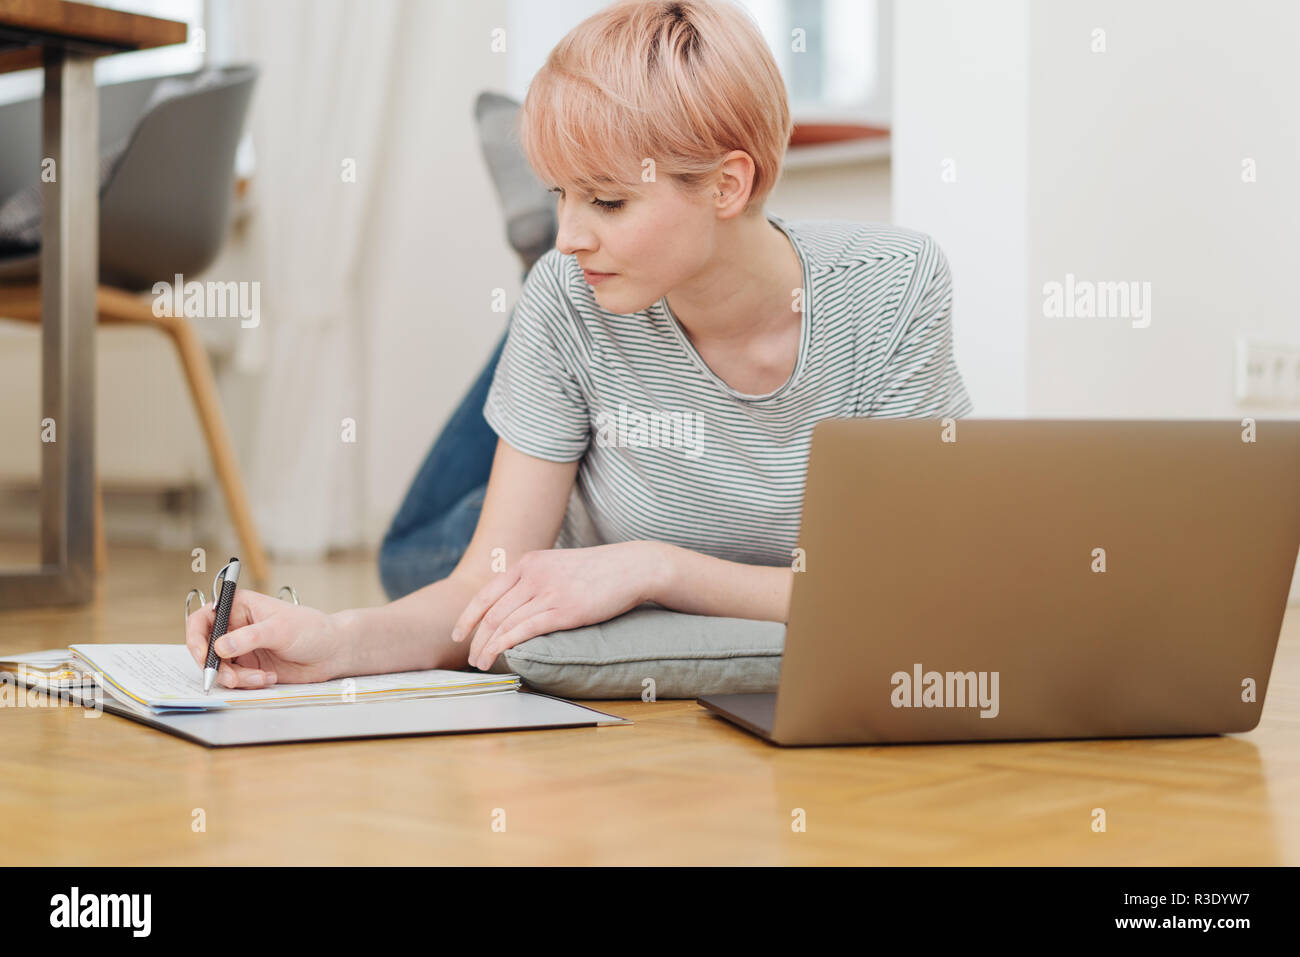 Attraktive Frau an einem Parkettboden auf einem Laptop Computer das Schreiben von Notizen in ein Notebook, wie sie von zu Hause aus oder Studien in einem Low Angle View funktioniert Stockfoto